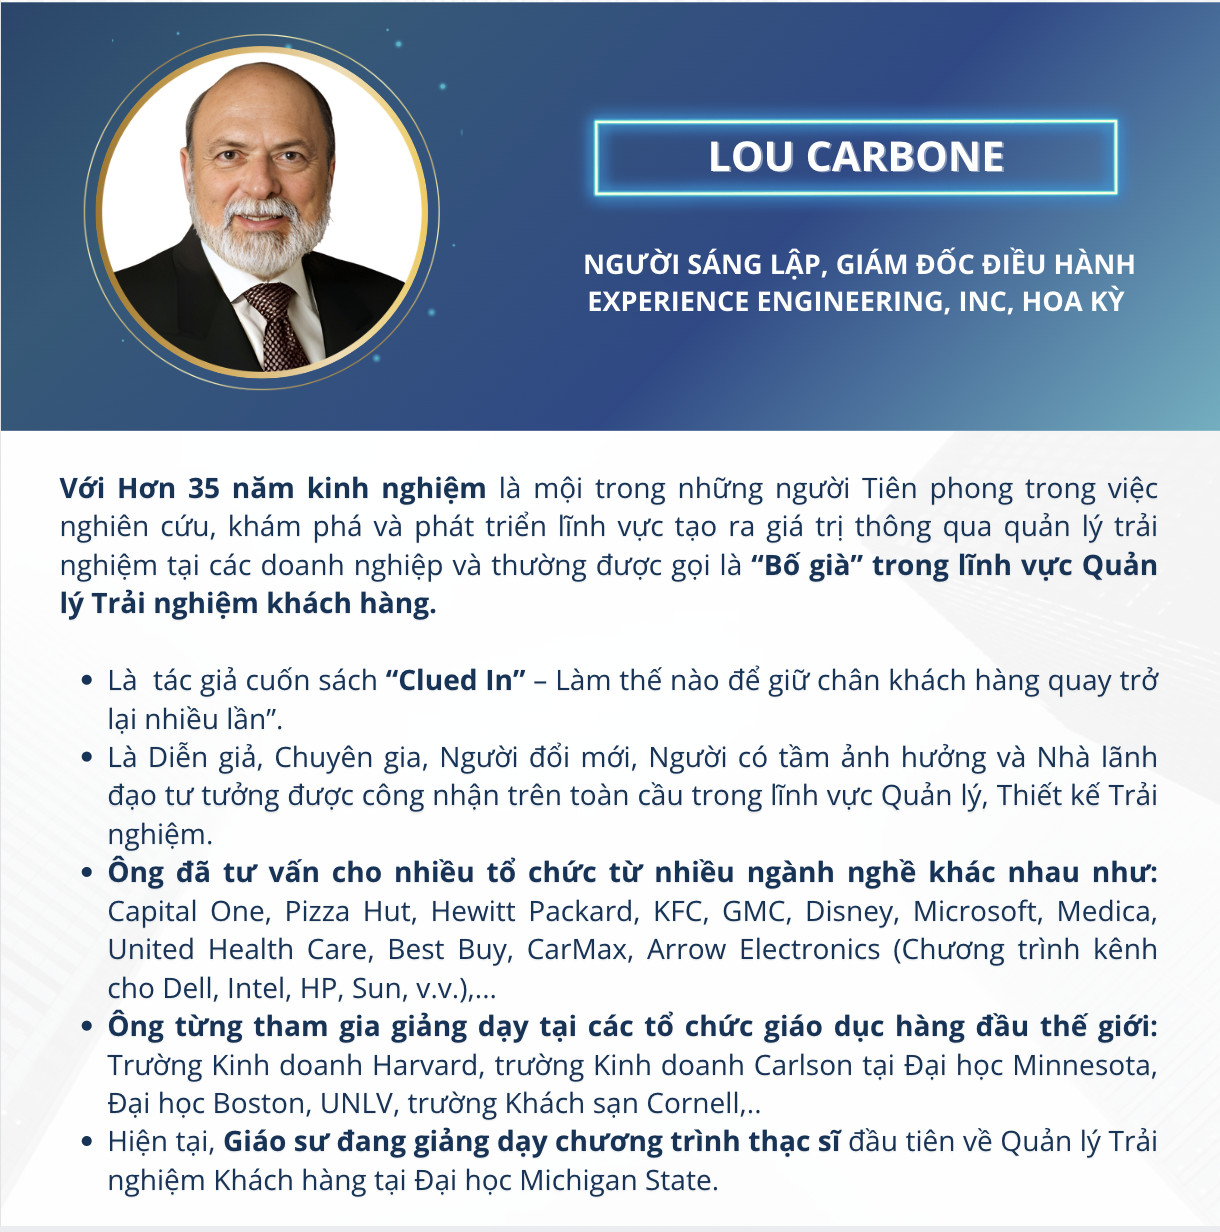 Giáo sư Lou Carbone – người sáng lập, giám đốc điều hành Experience Engineering, Inc, Hoa kỳ (Giảng viên khóa học CXM - Quản trị trải nghiệm khách hàng MSU & FPT)